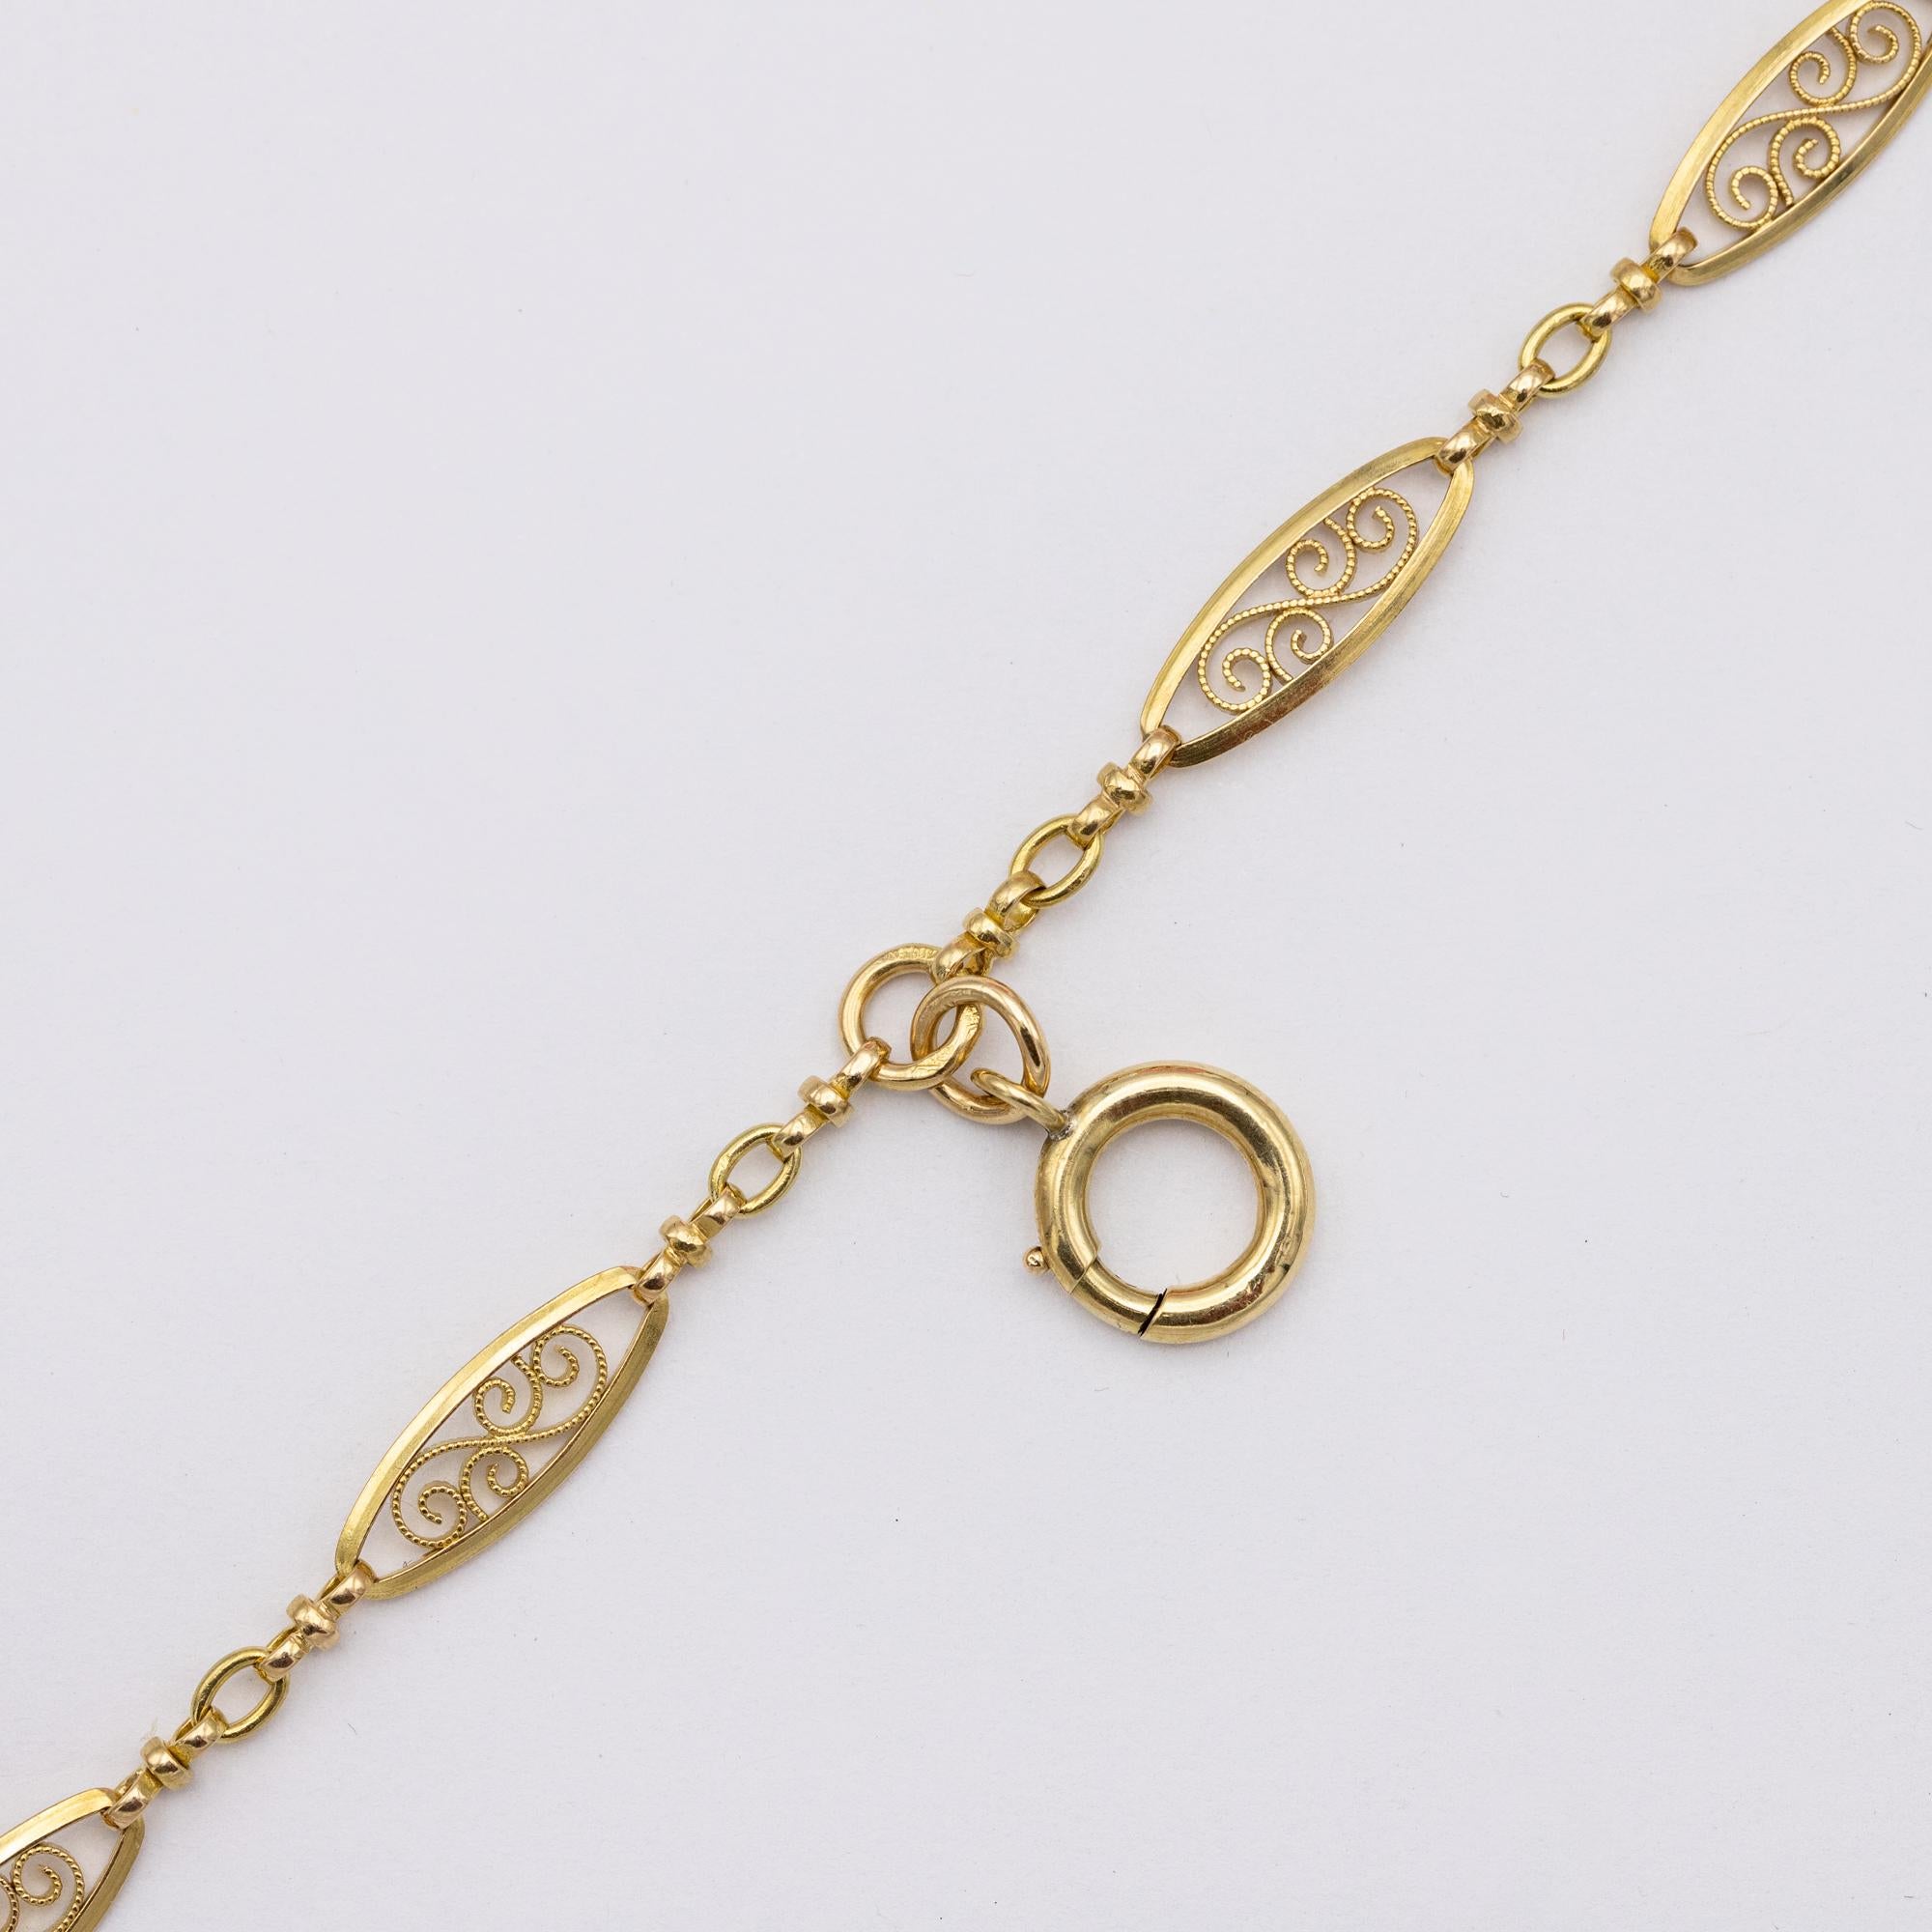 Antique 18k gold Sautoir necklace, 155cm long guard, Victorian double rope chain 1